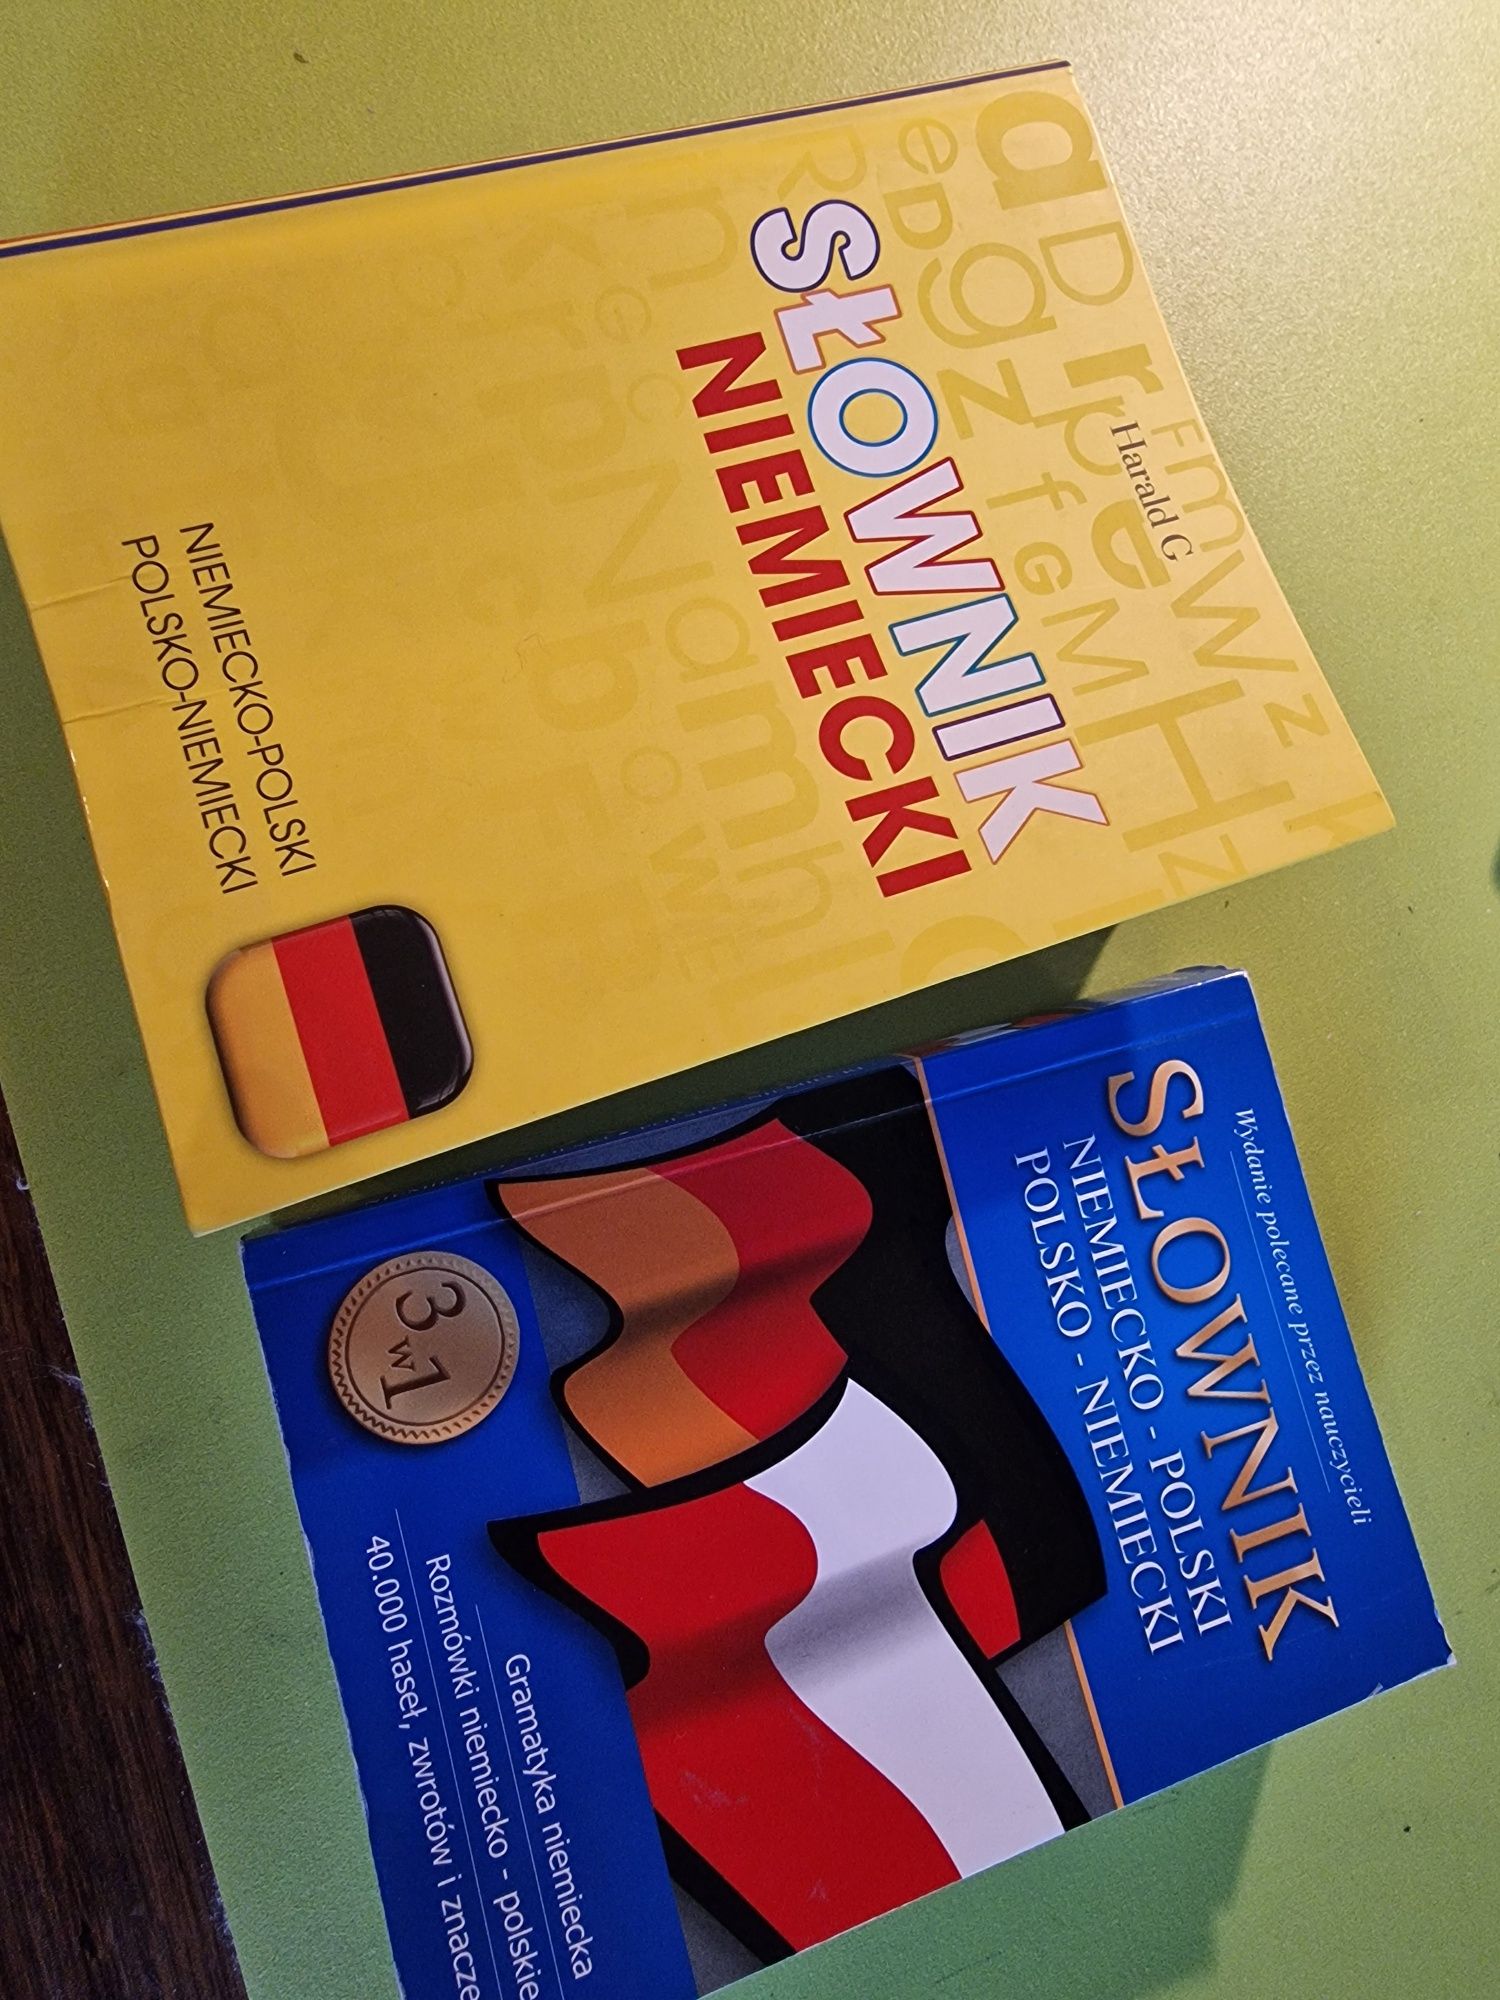 Dwa słowniki polsko-niemieckie